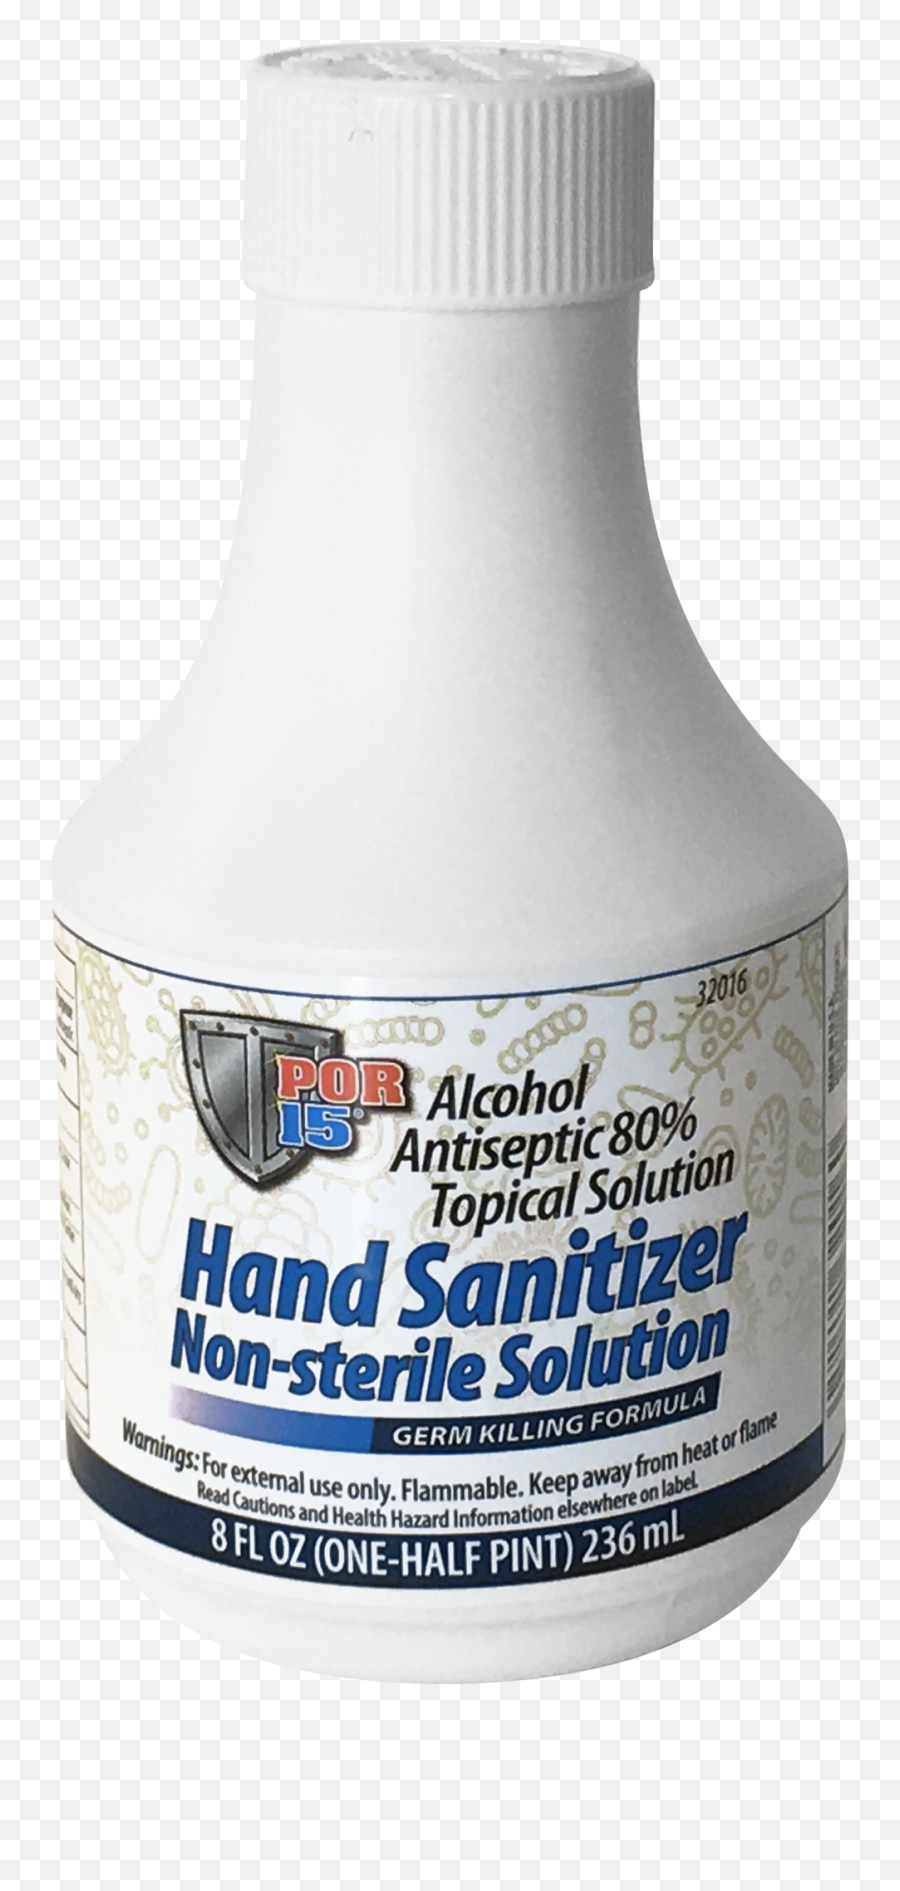 Por - 15 Hand Sanitizer Artpor15com U003e Downloads U003e Por15 Emoji,Hand Sanitizer Png